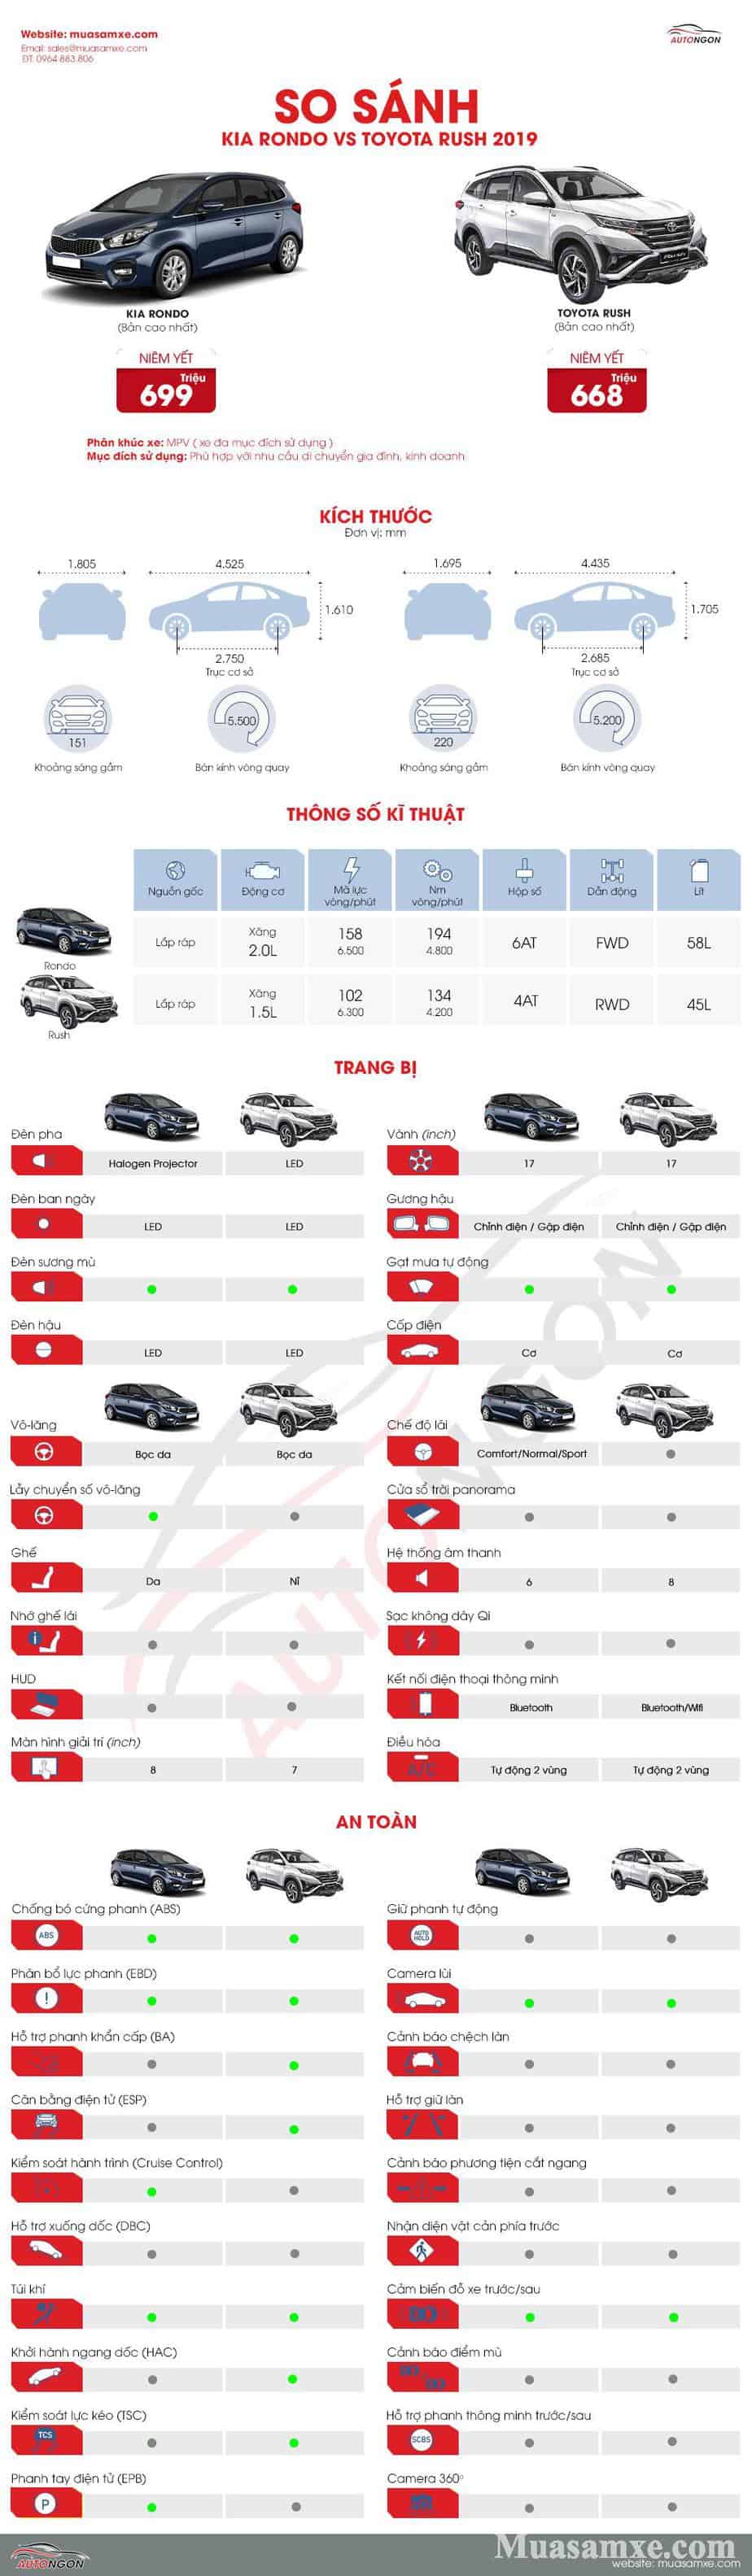 So sánh KIA Rondo với Toyota Rush 2019